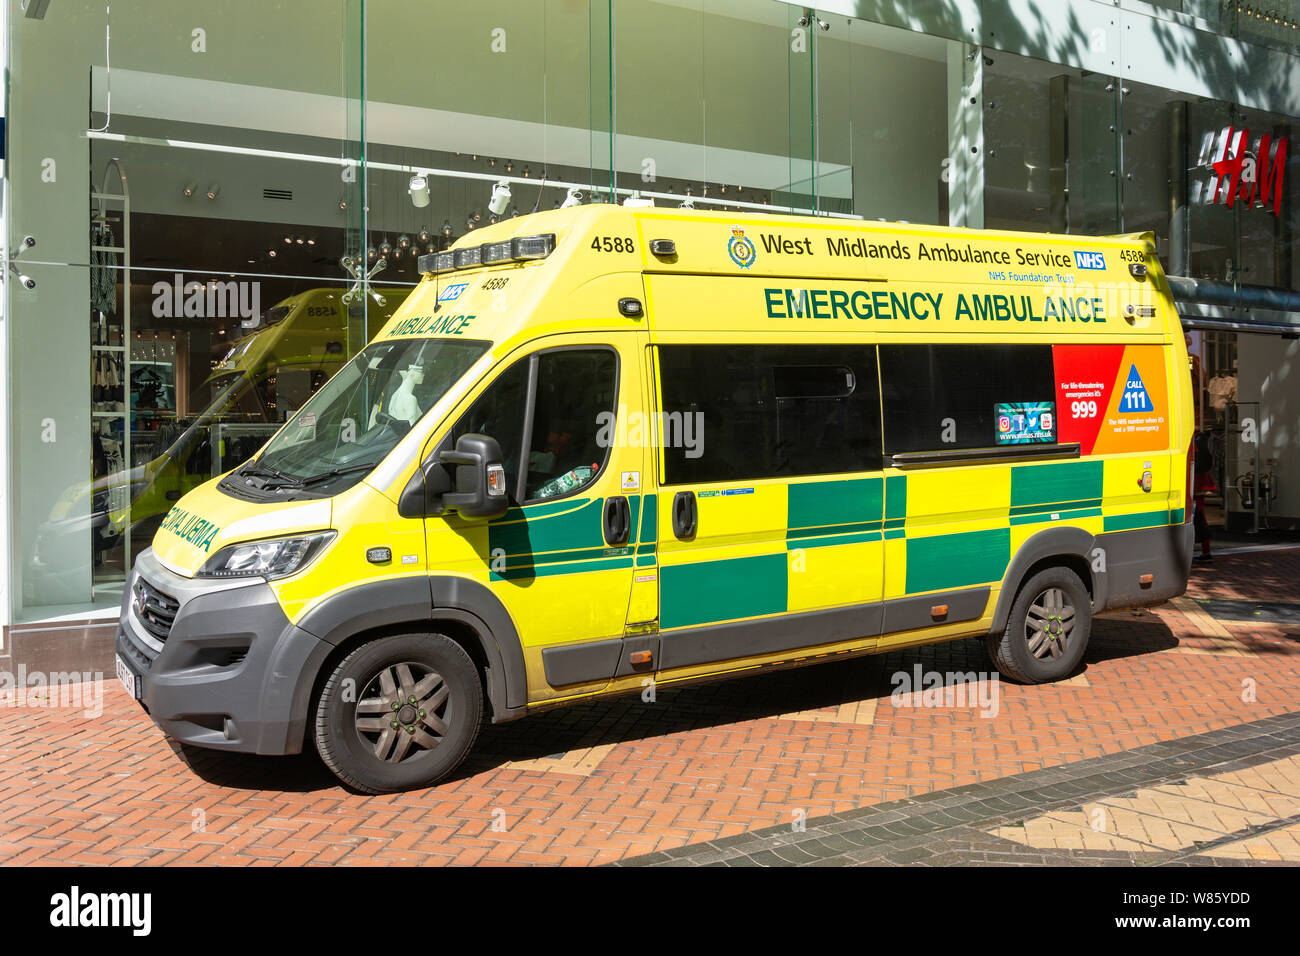 West Midlands Ambulance Service NHS ambulance d'urgence, New Street, Birmingham, West Midlands, England, United Kingdom Banque D'Images